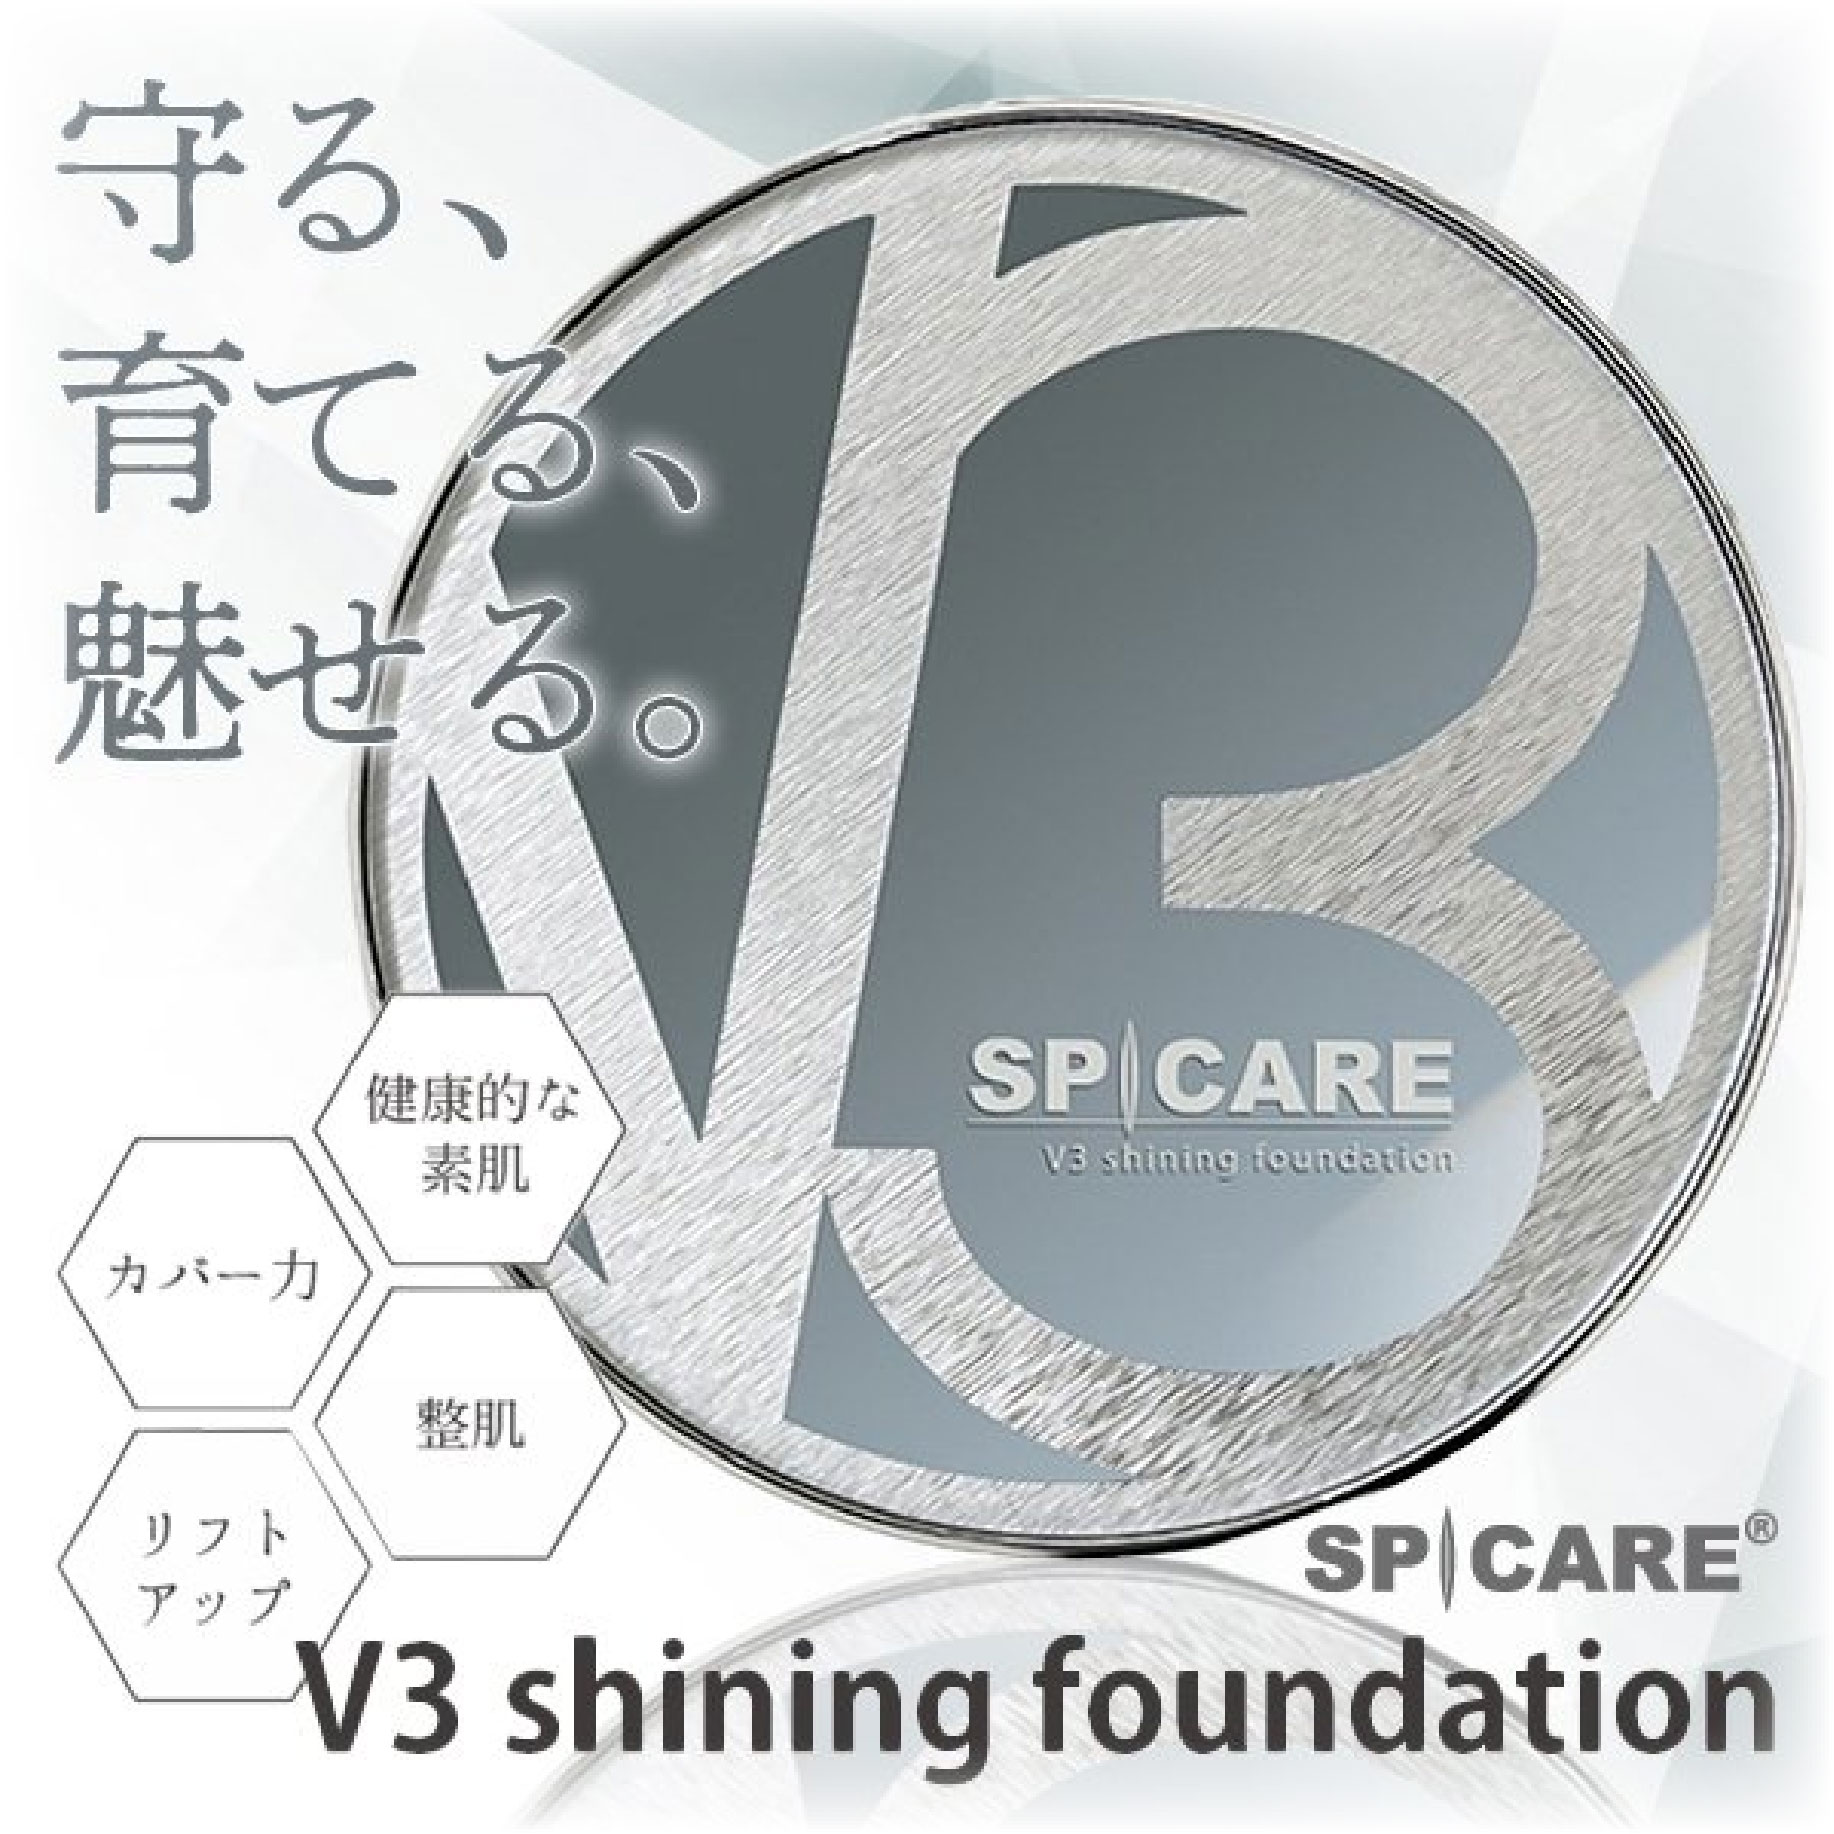 SPICARE V3 shining Foundation 15g - OYM | 韓國美容新體驗！